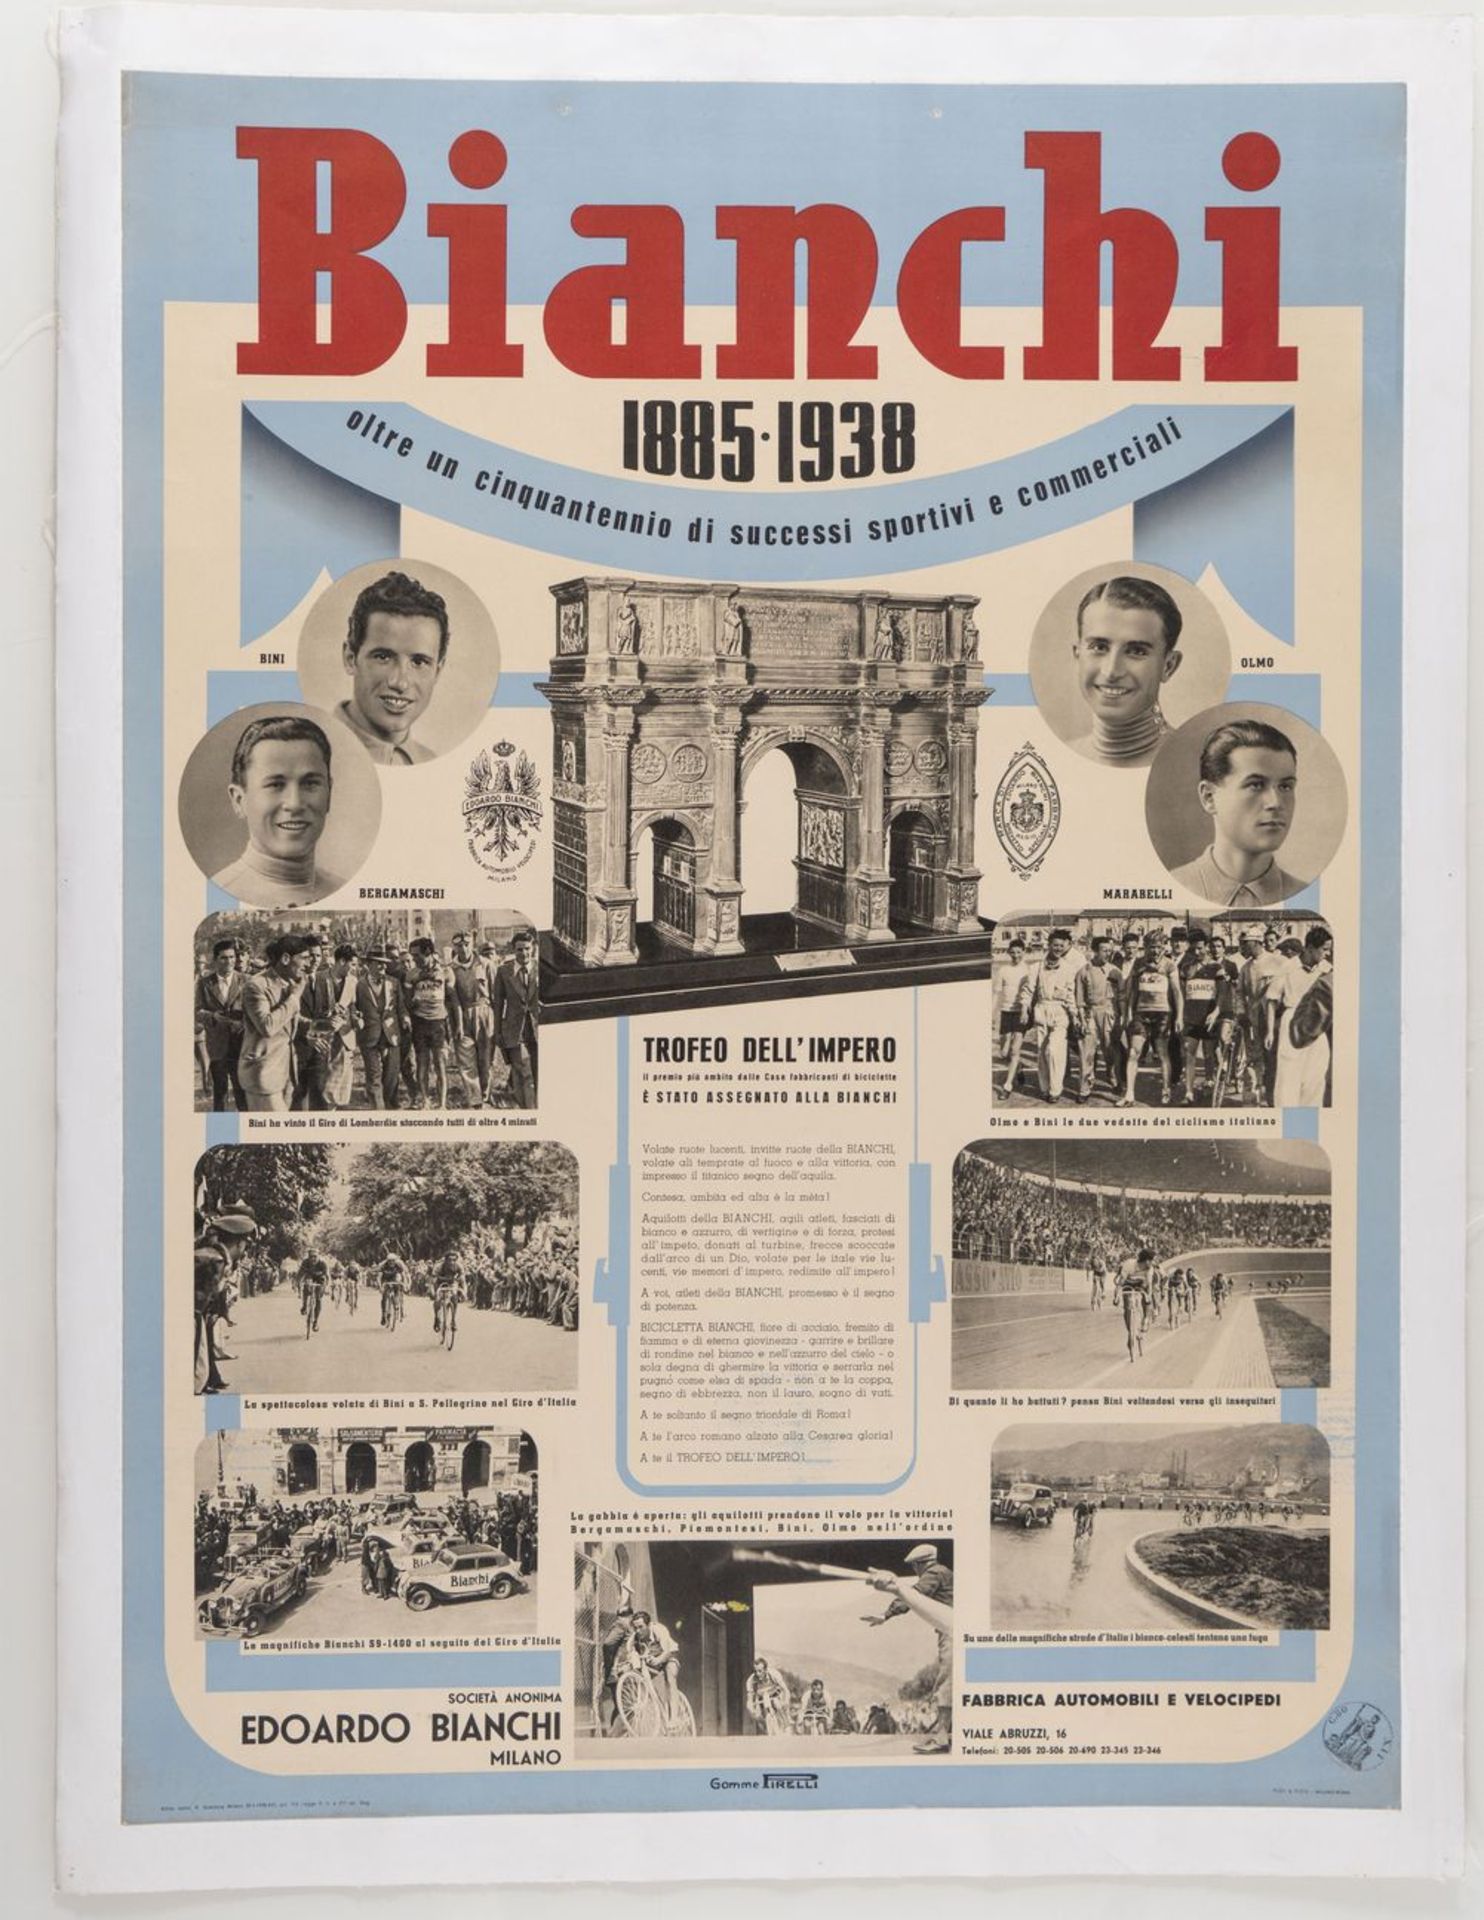 Manifesto Bianchi 1938			
								
Manifesto originale del 1938, celebrativo dei successi sportivi d